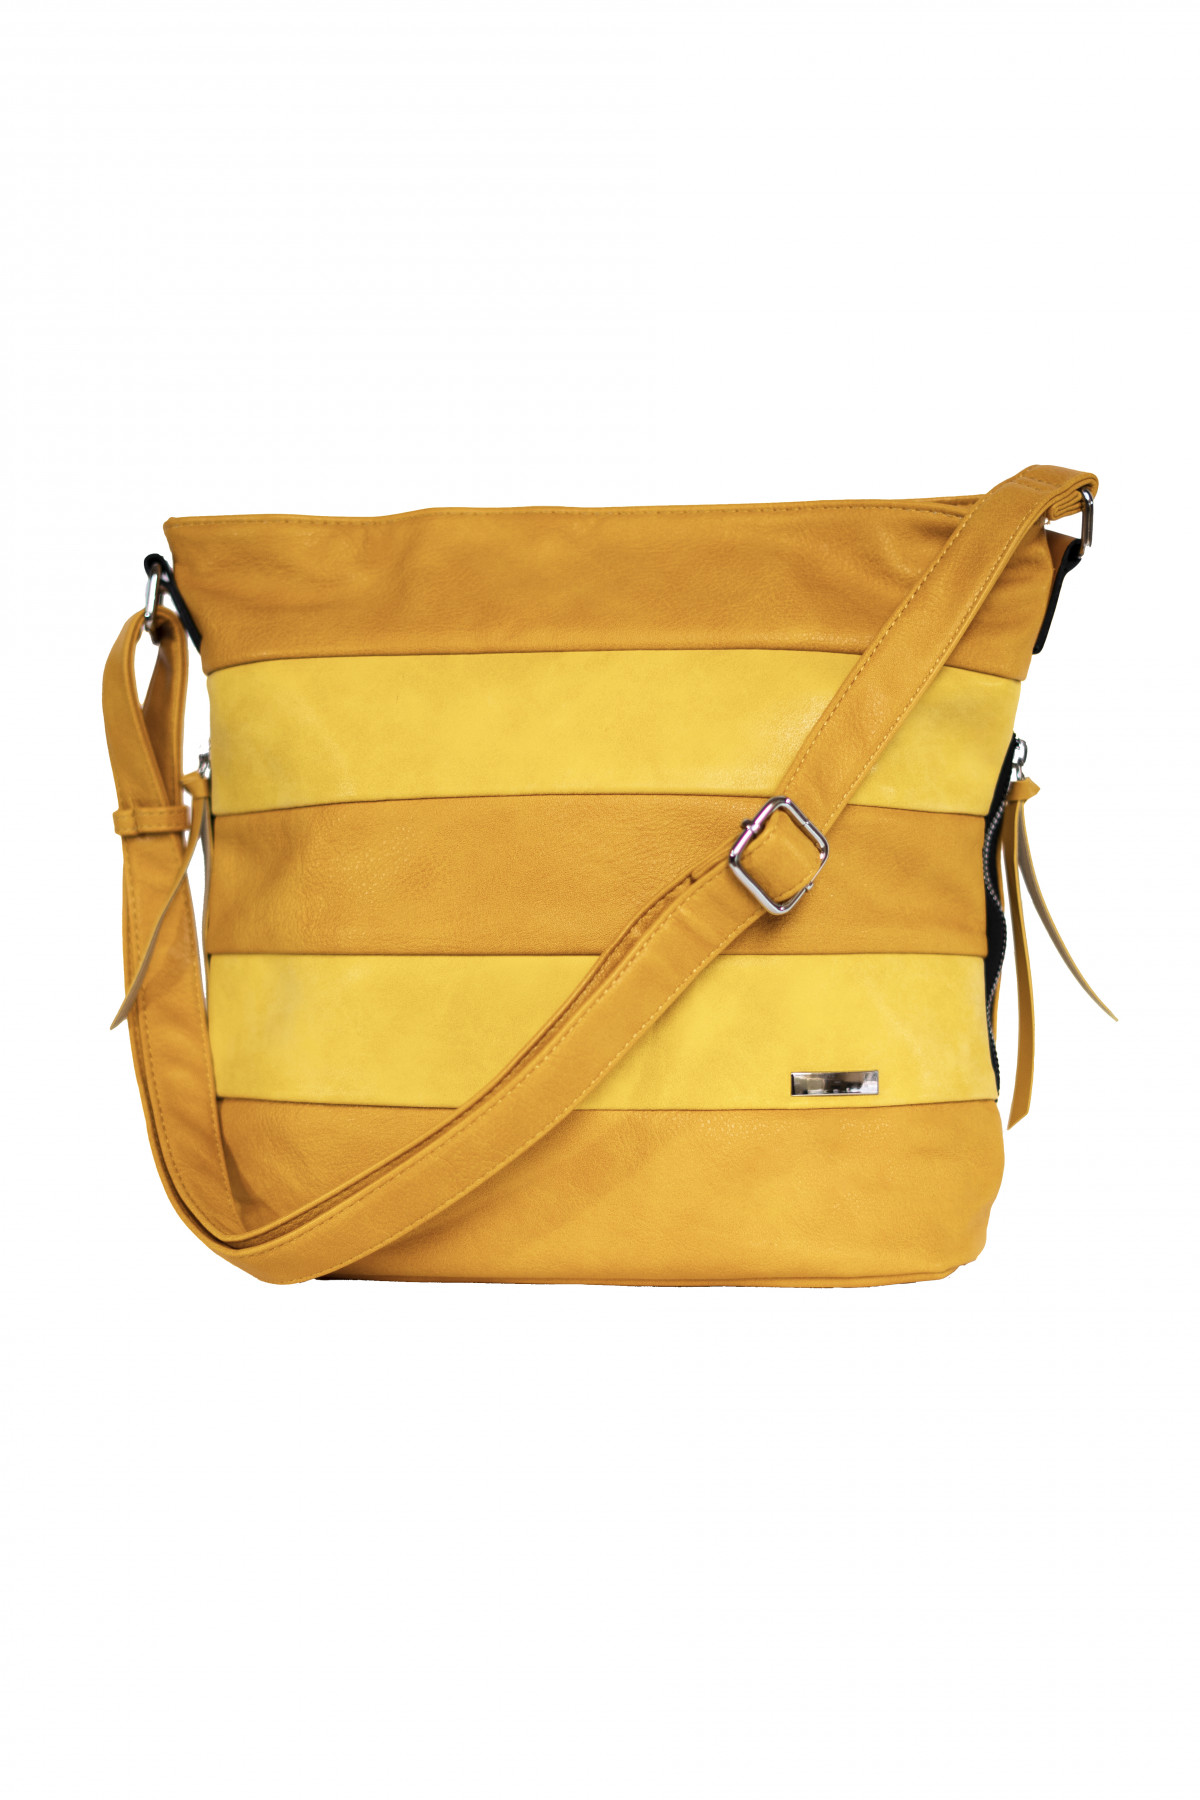 MaxModa női lapos oldal táska csíkos sárga